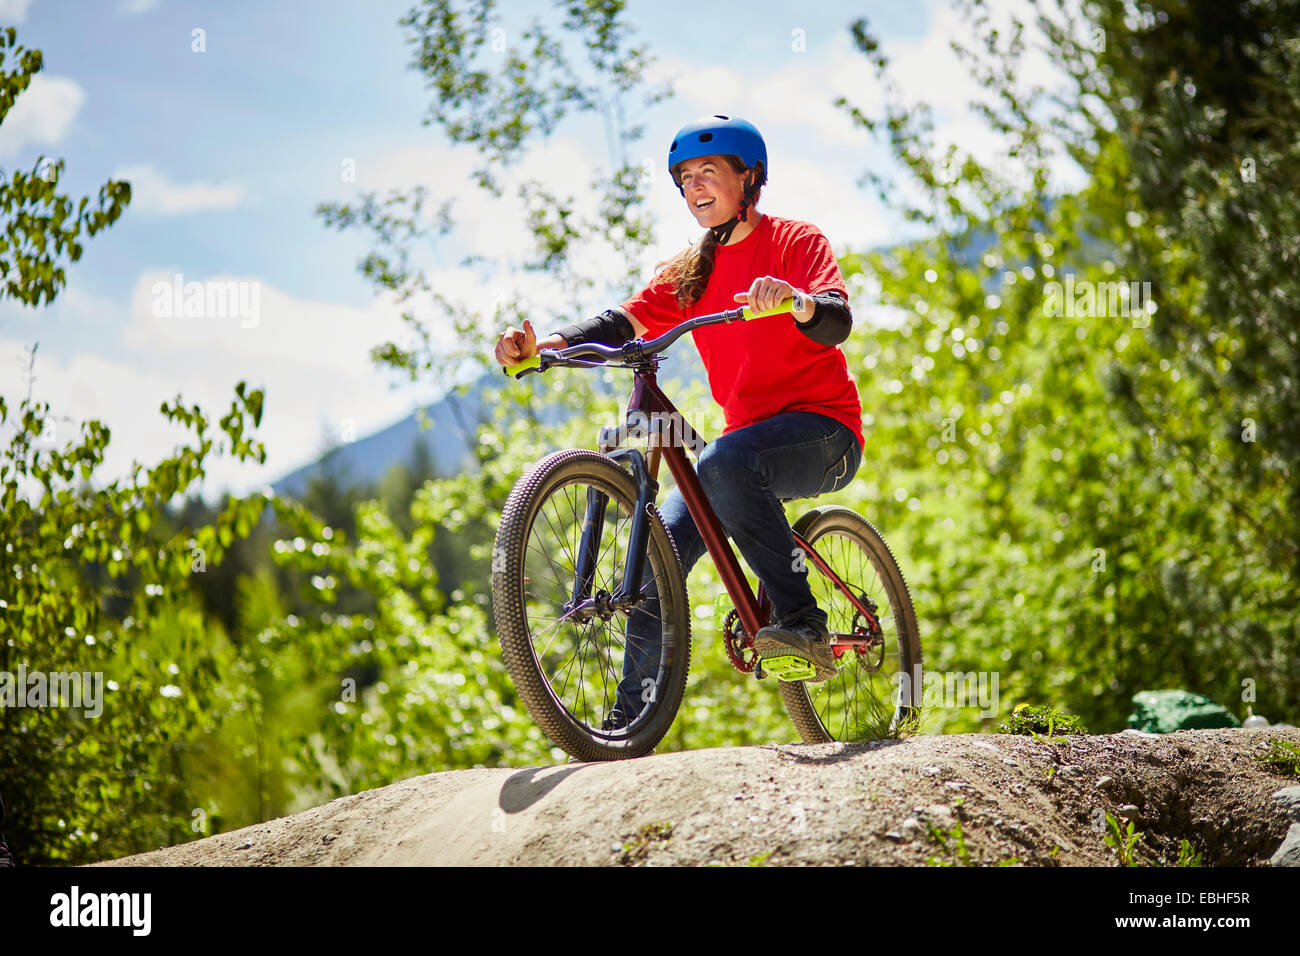 Hembra joven ciclista de BMX preparada en el borde de la roca en el bosque Foto de stock